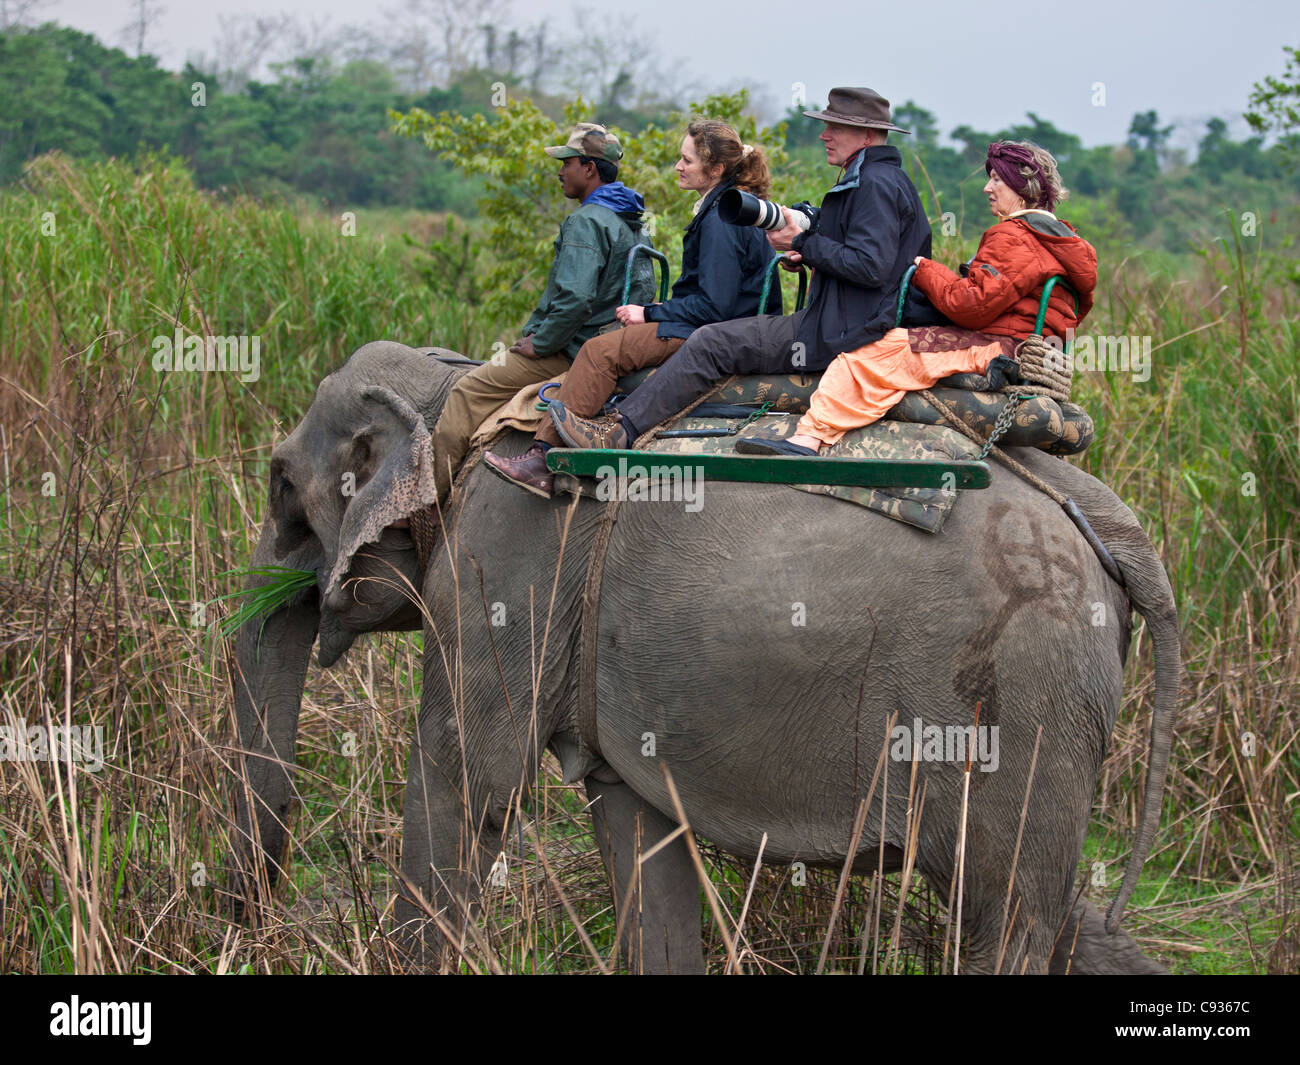 Touristen auf einem Elefanten suchen nach großen indischen einen gehörnten Nashörner und andere wilde Tiere groß Sumpf Gras. Stockfoto